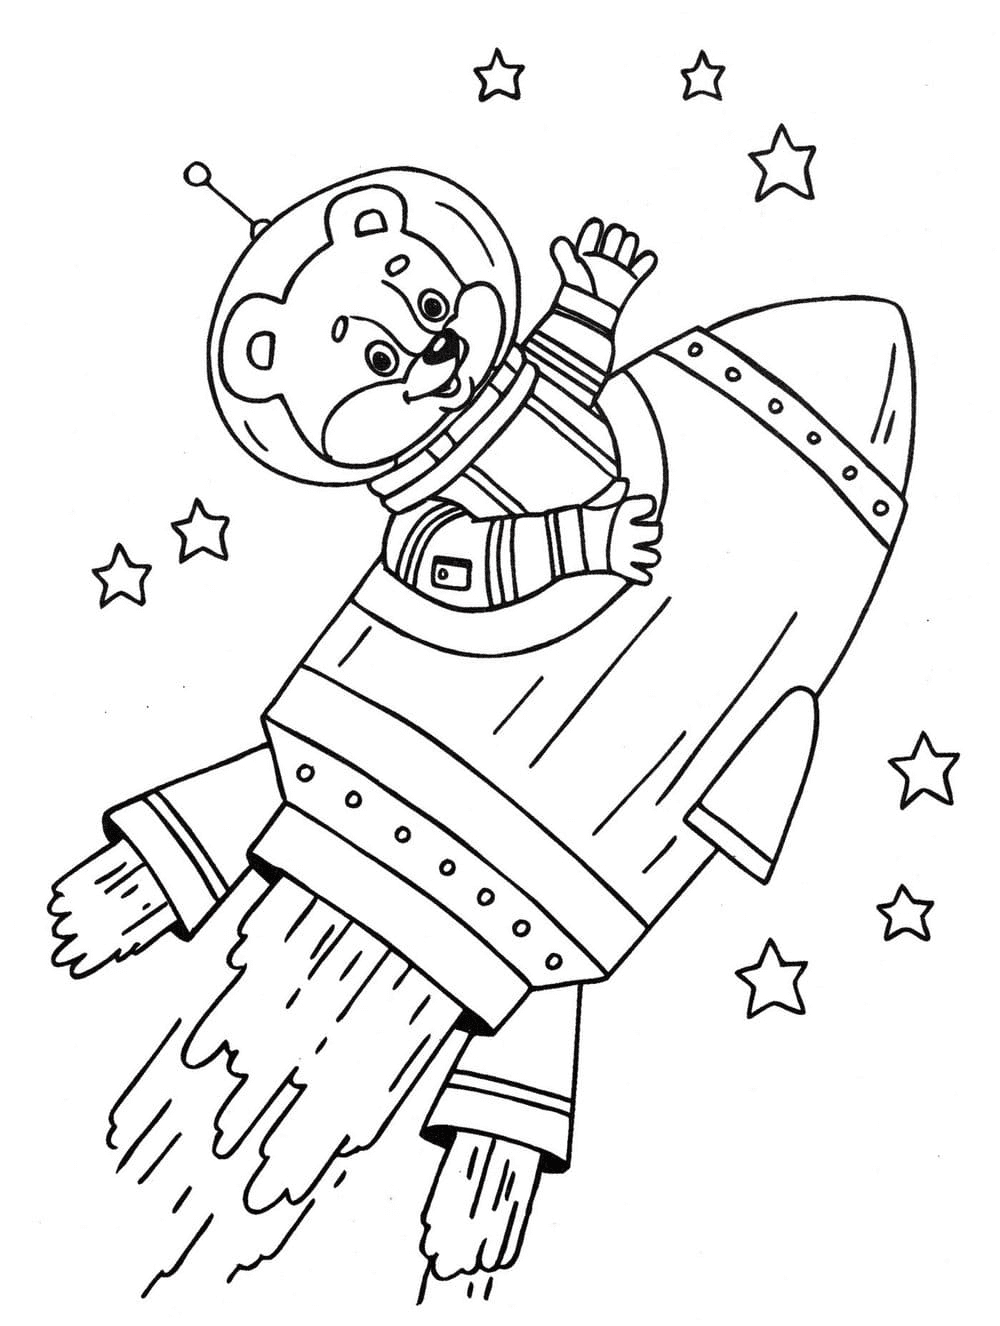 Urso voa do planeta para o espaço